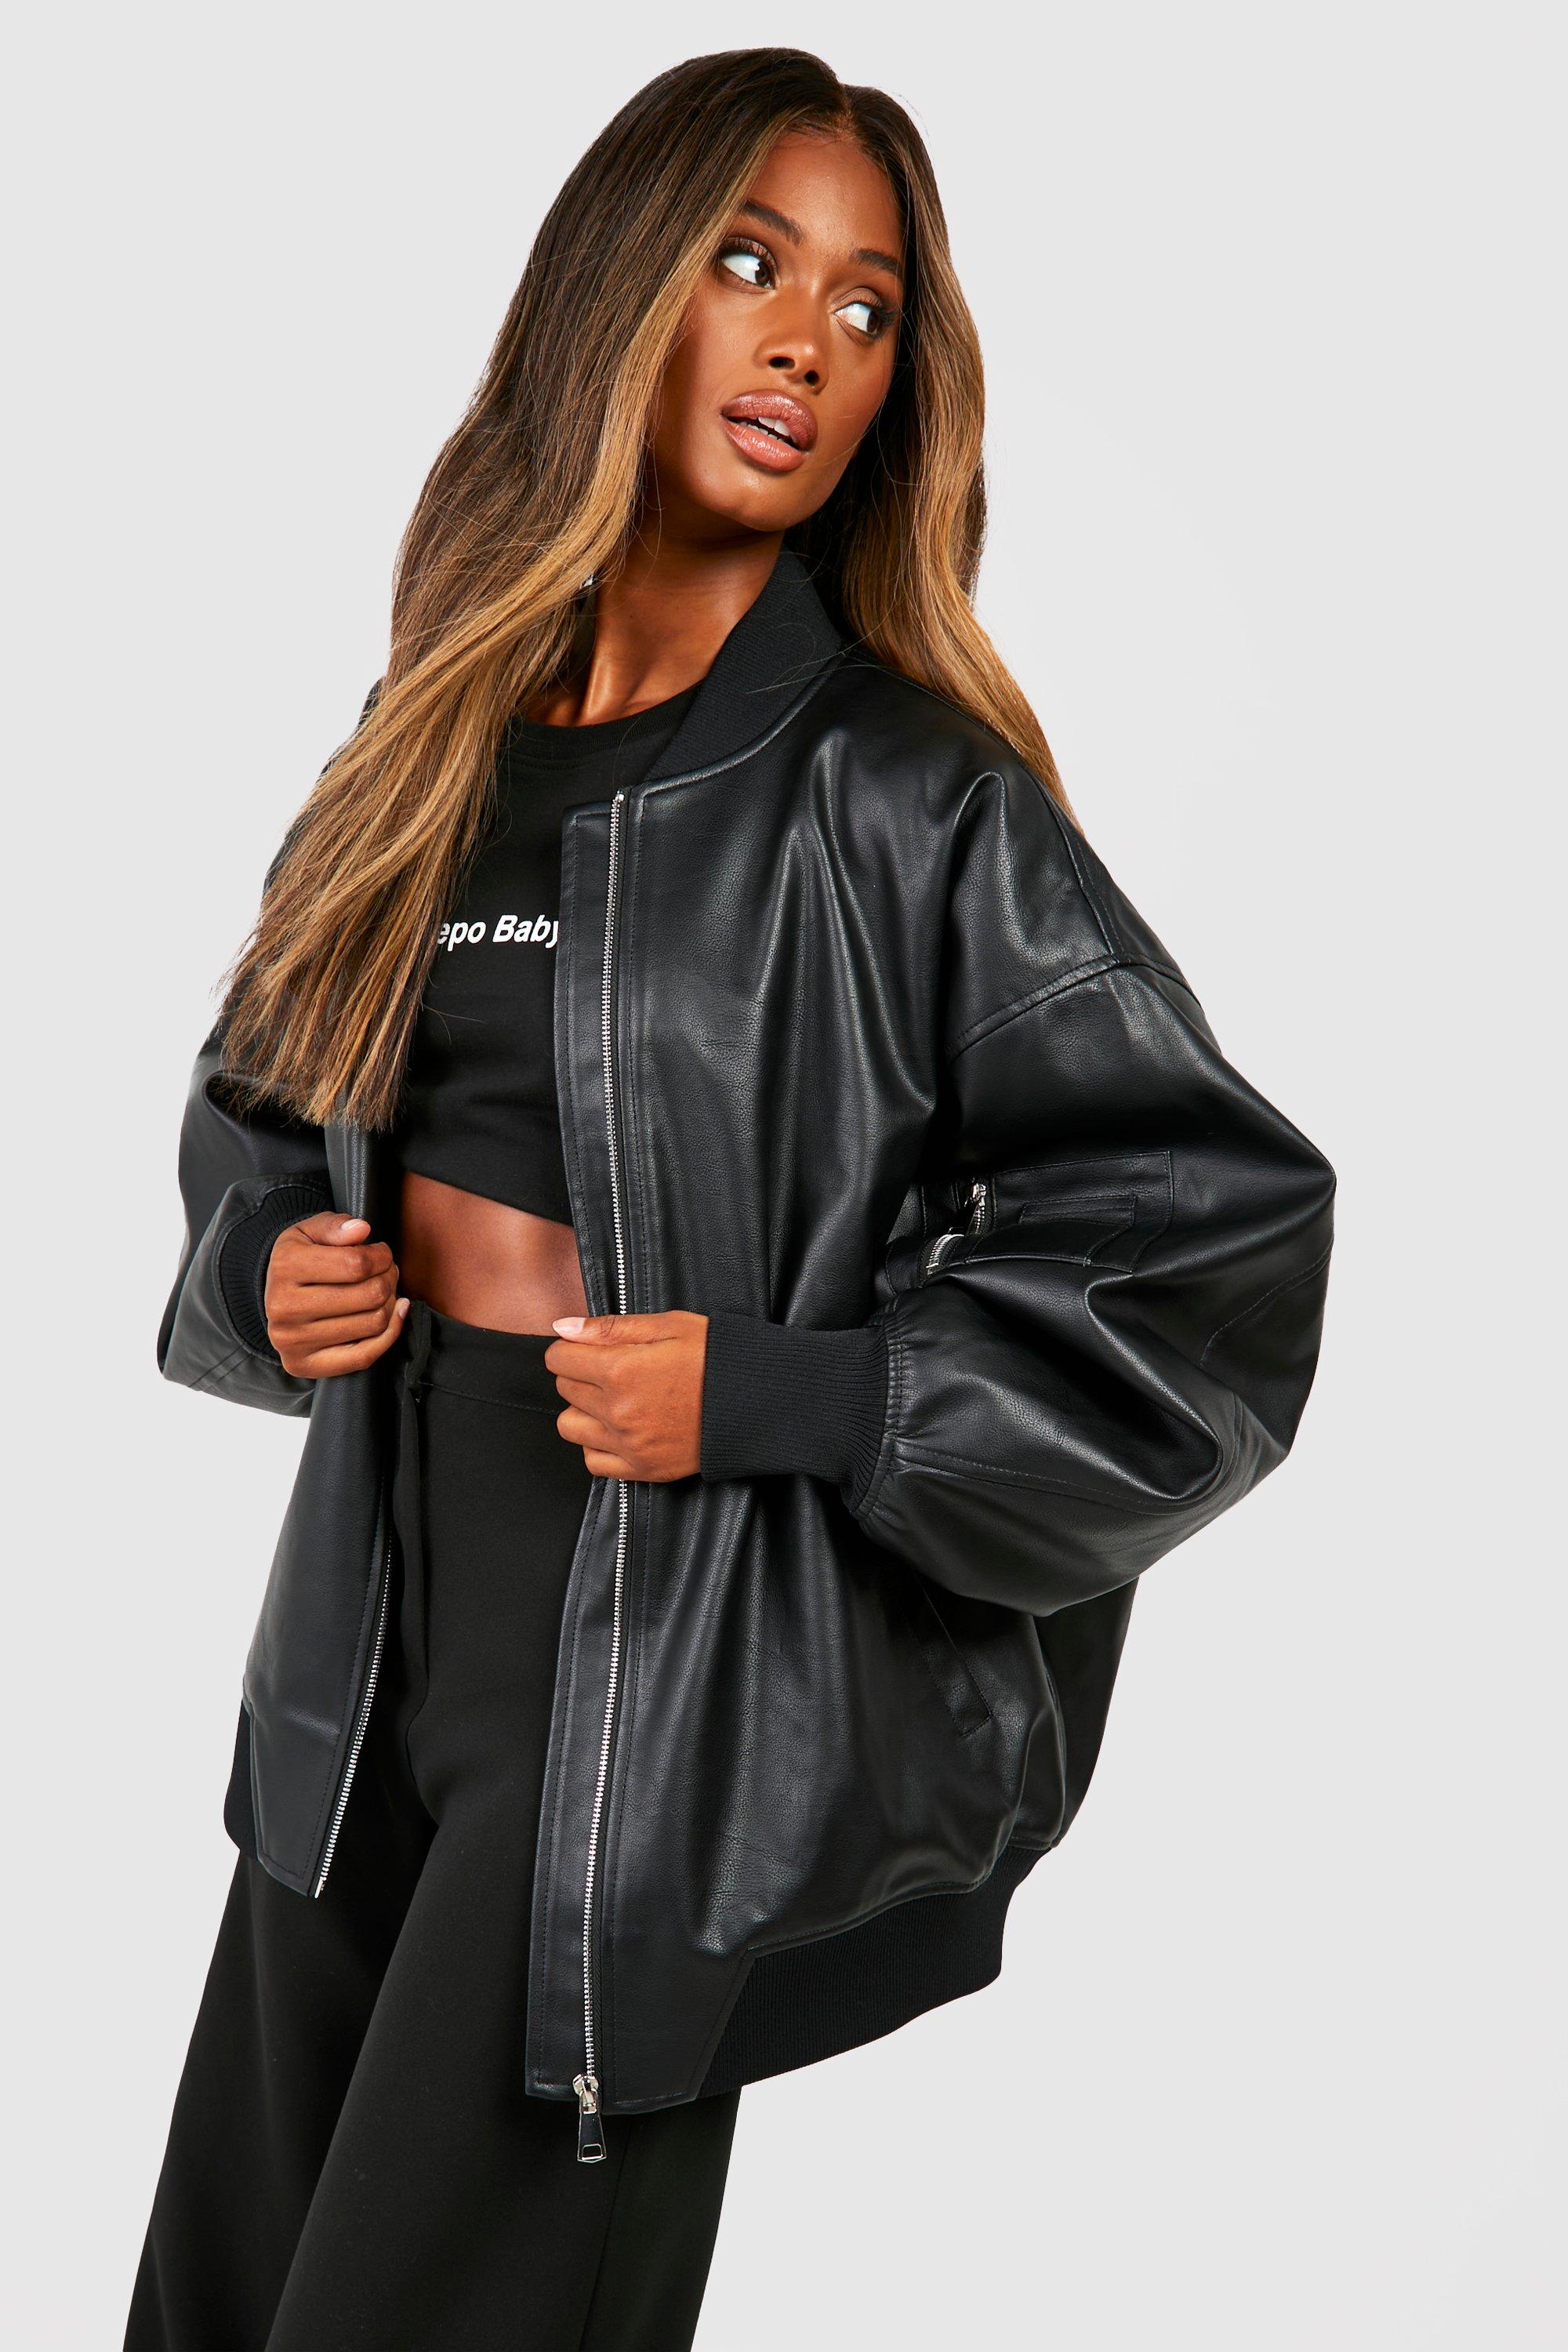 https://media.boohoo.com/i/boohoo/gzz66635_black_xl_3/female-black-oversized-faux-leather-bomber-jacket